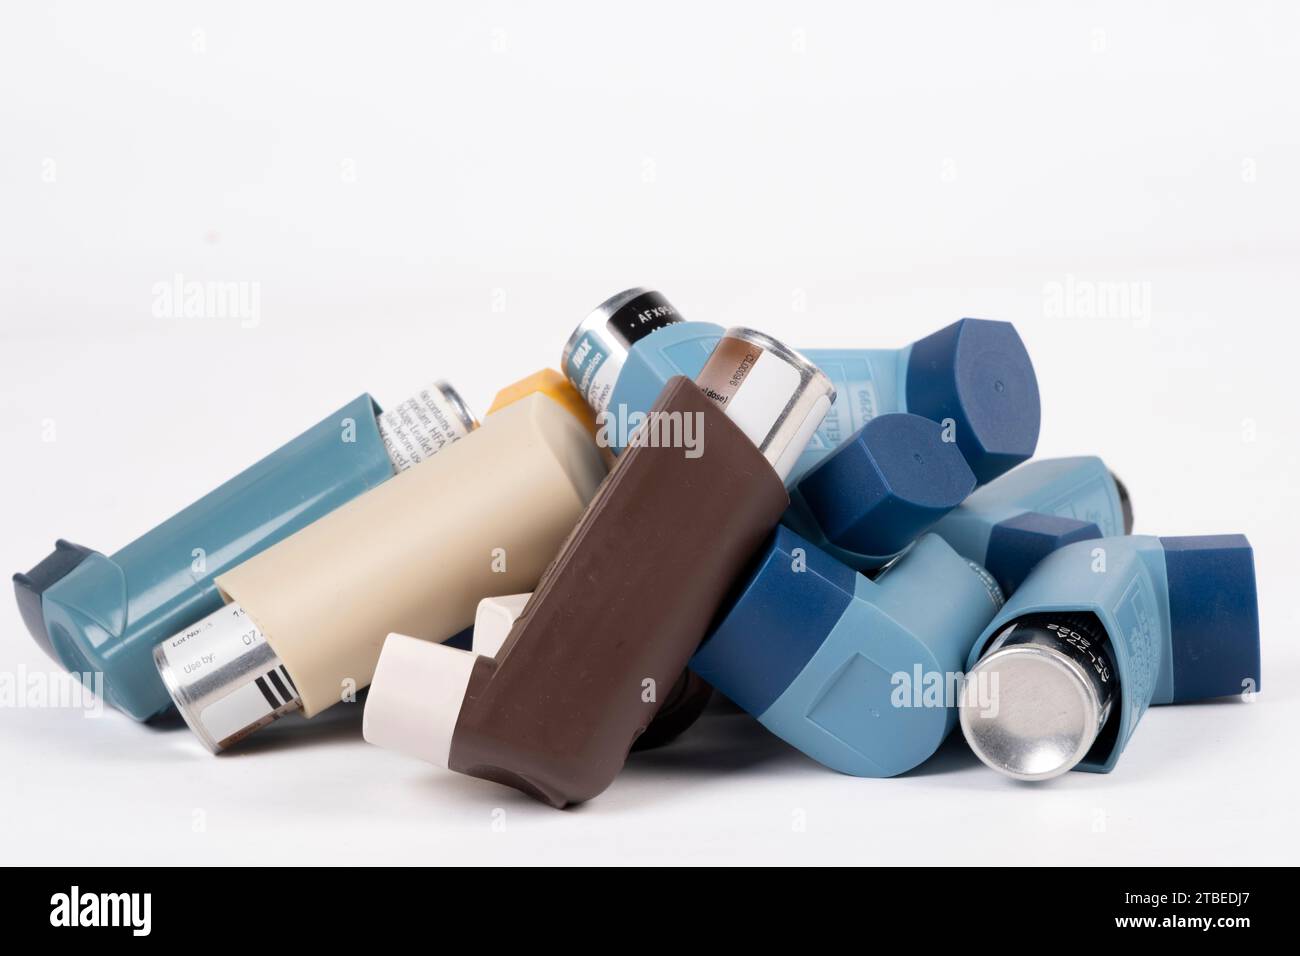 Stapel von MDI-Inhalatoren (Dosierinhalatoren) Asthma-Inhalatoren, die als unerwünscht für die Umwelt gelten und durch DPI (Trockenpulverinhalator) ersetzt werden Stockfoto